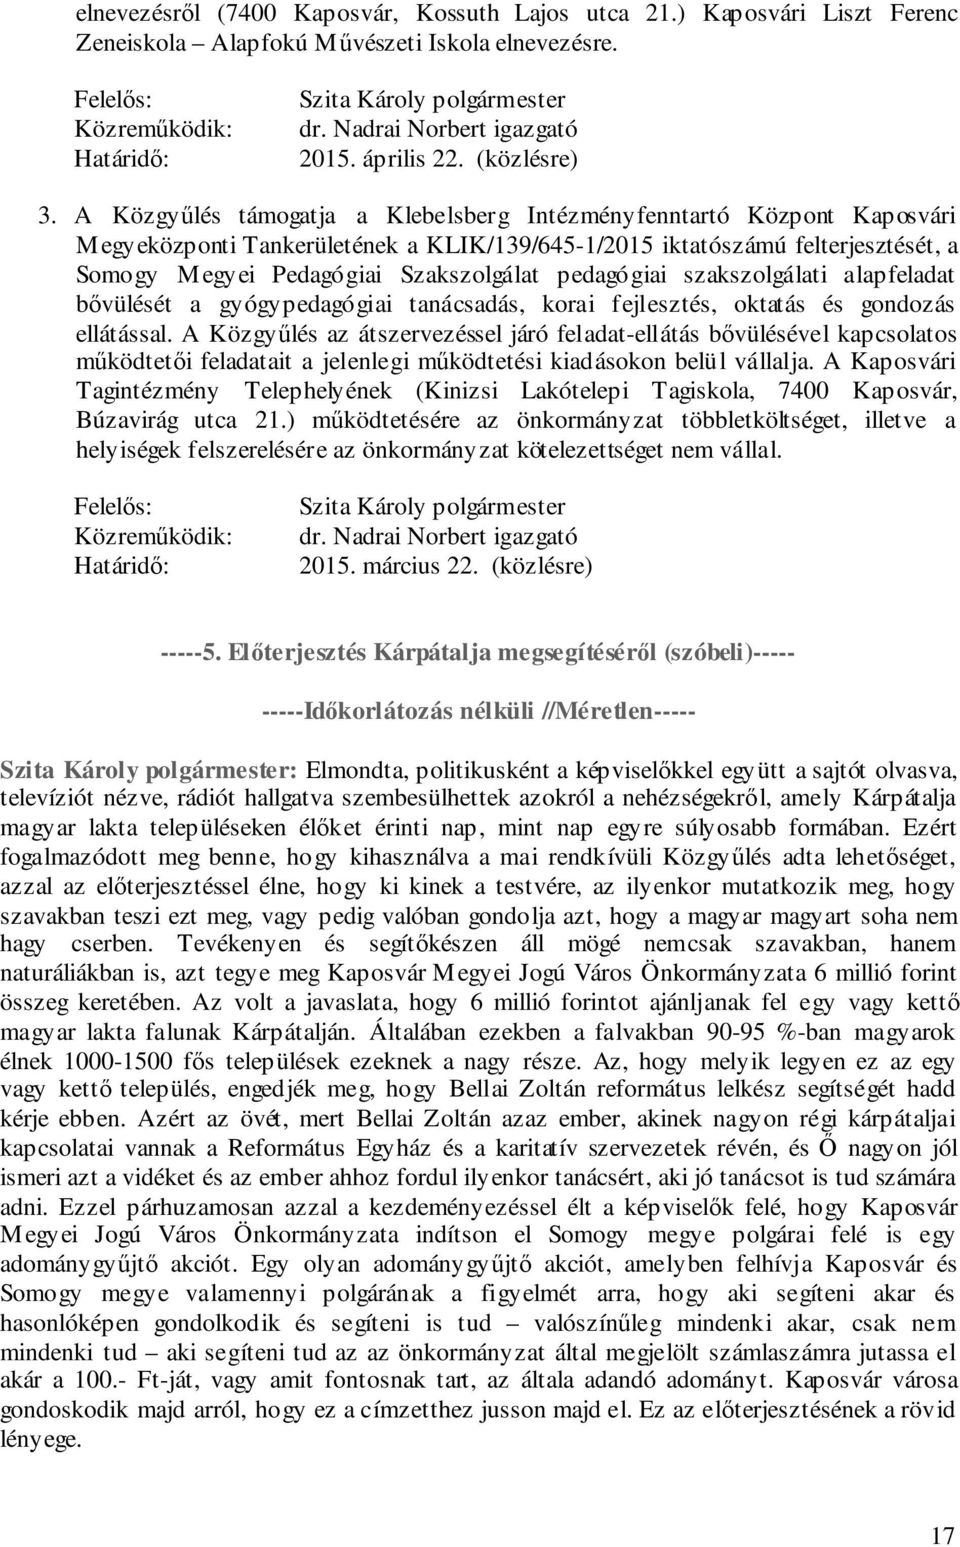 A Közgyűlés támogatja a Klebelsberg Intézményfenntartó Központ Kaposvári Megyeközponti Tankerületének a KLIK/139/645-1/2015 iktatószámú felterjesztését, a Somogy Megyei Pedagógiai Szakszolgálat